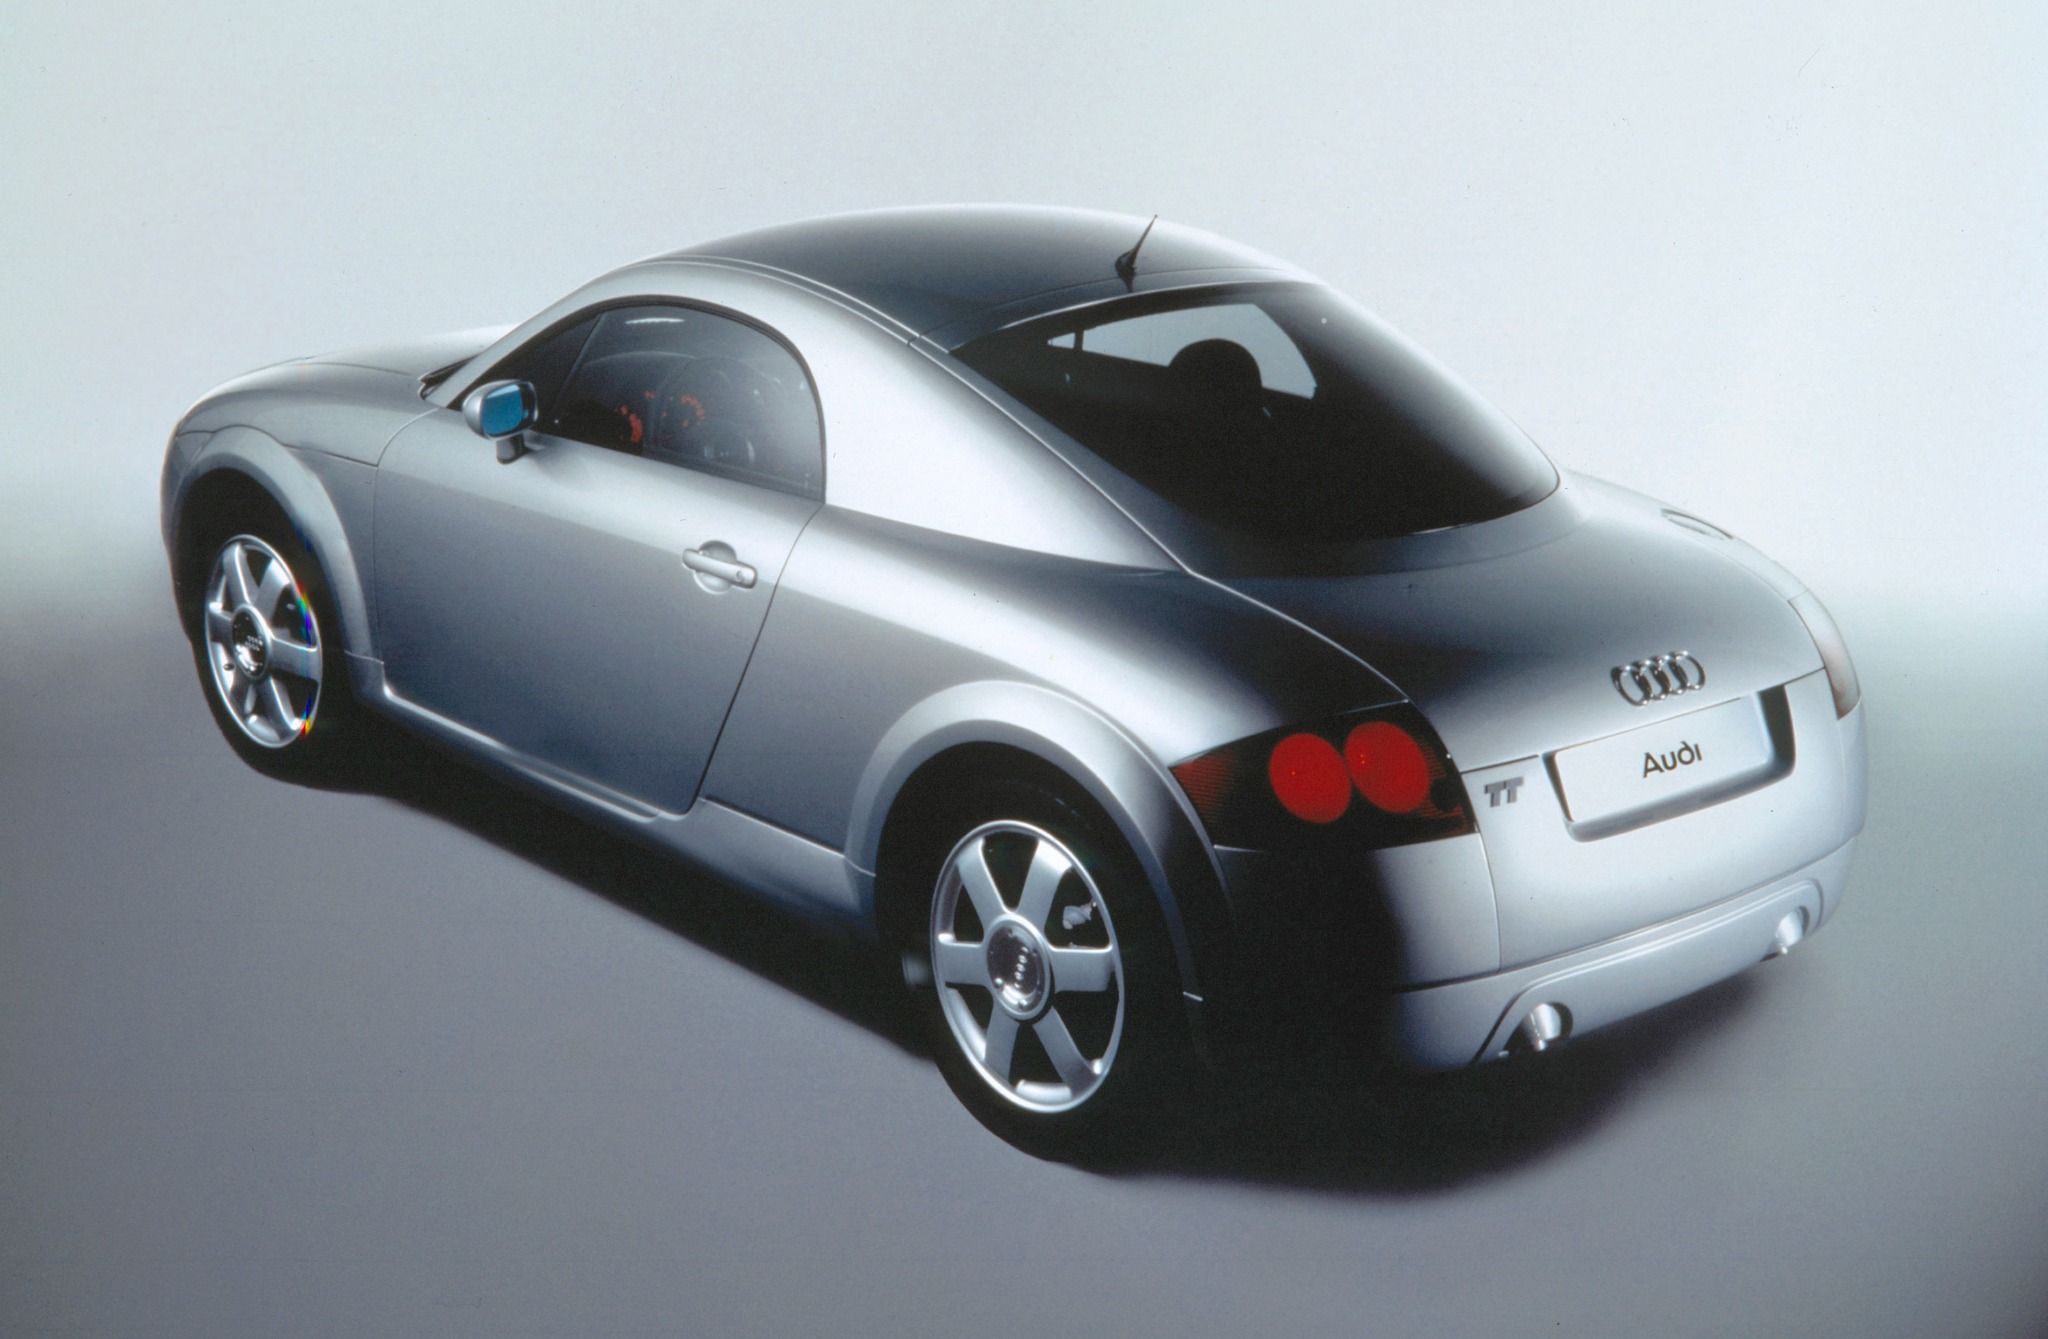 Audi TT 1995 Concept